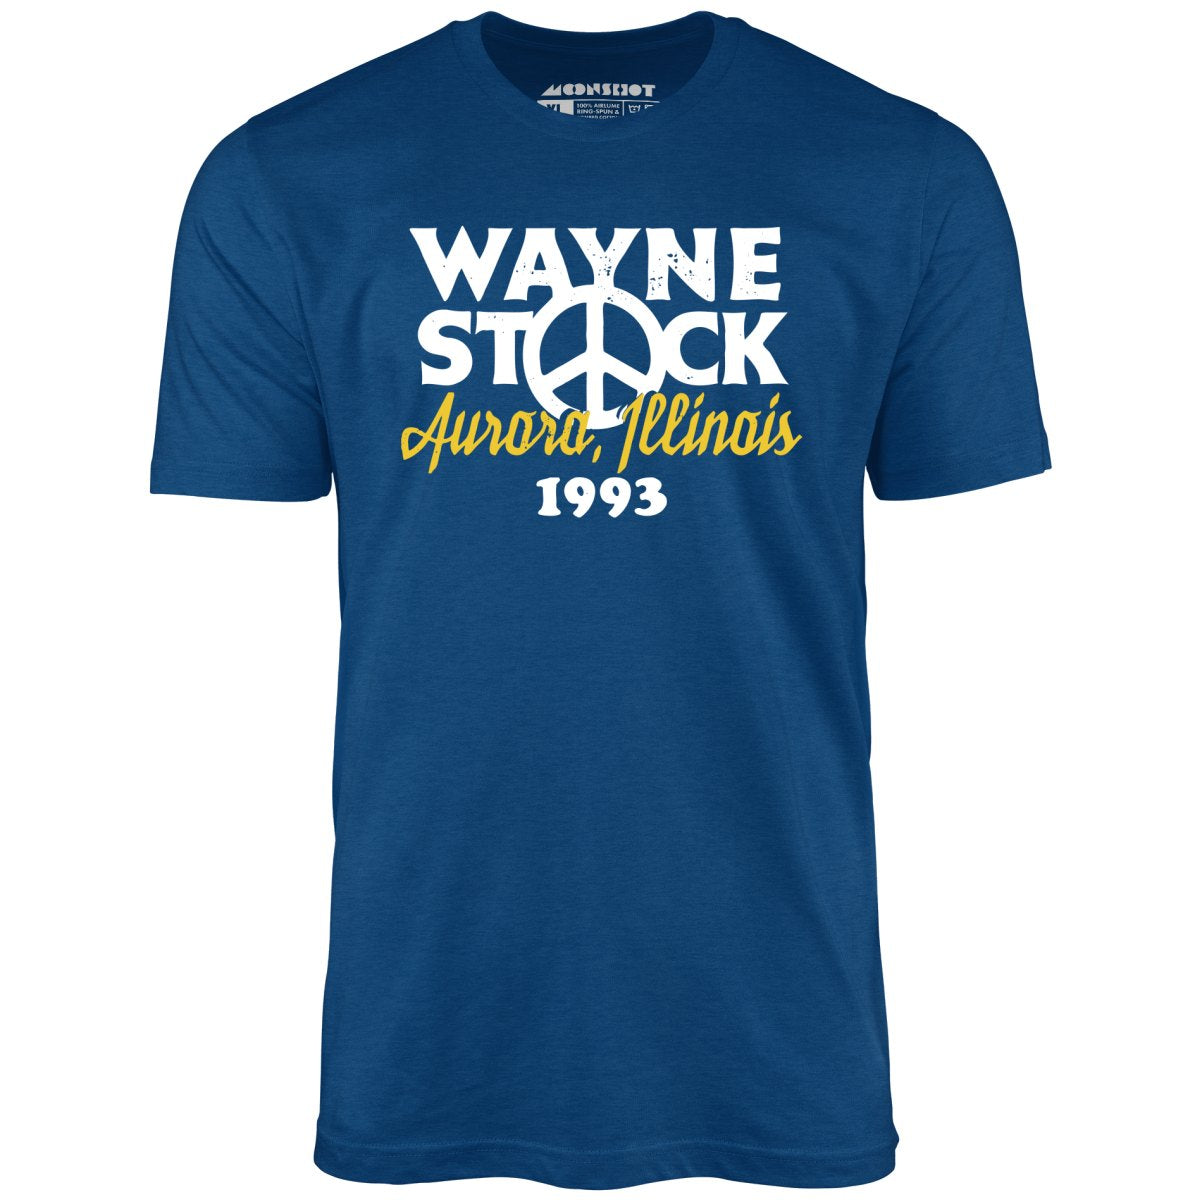 Wayne's World Stan Mikita's Donuts Inspired T Shirt